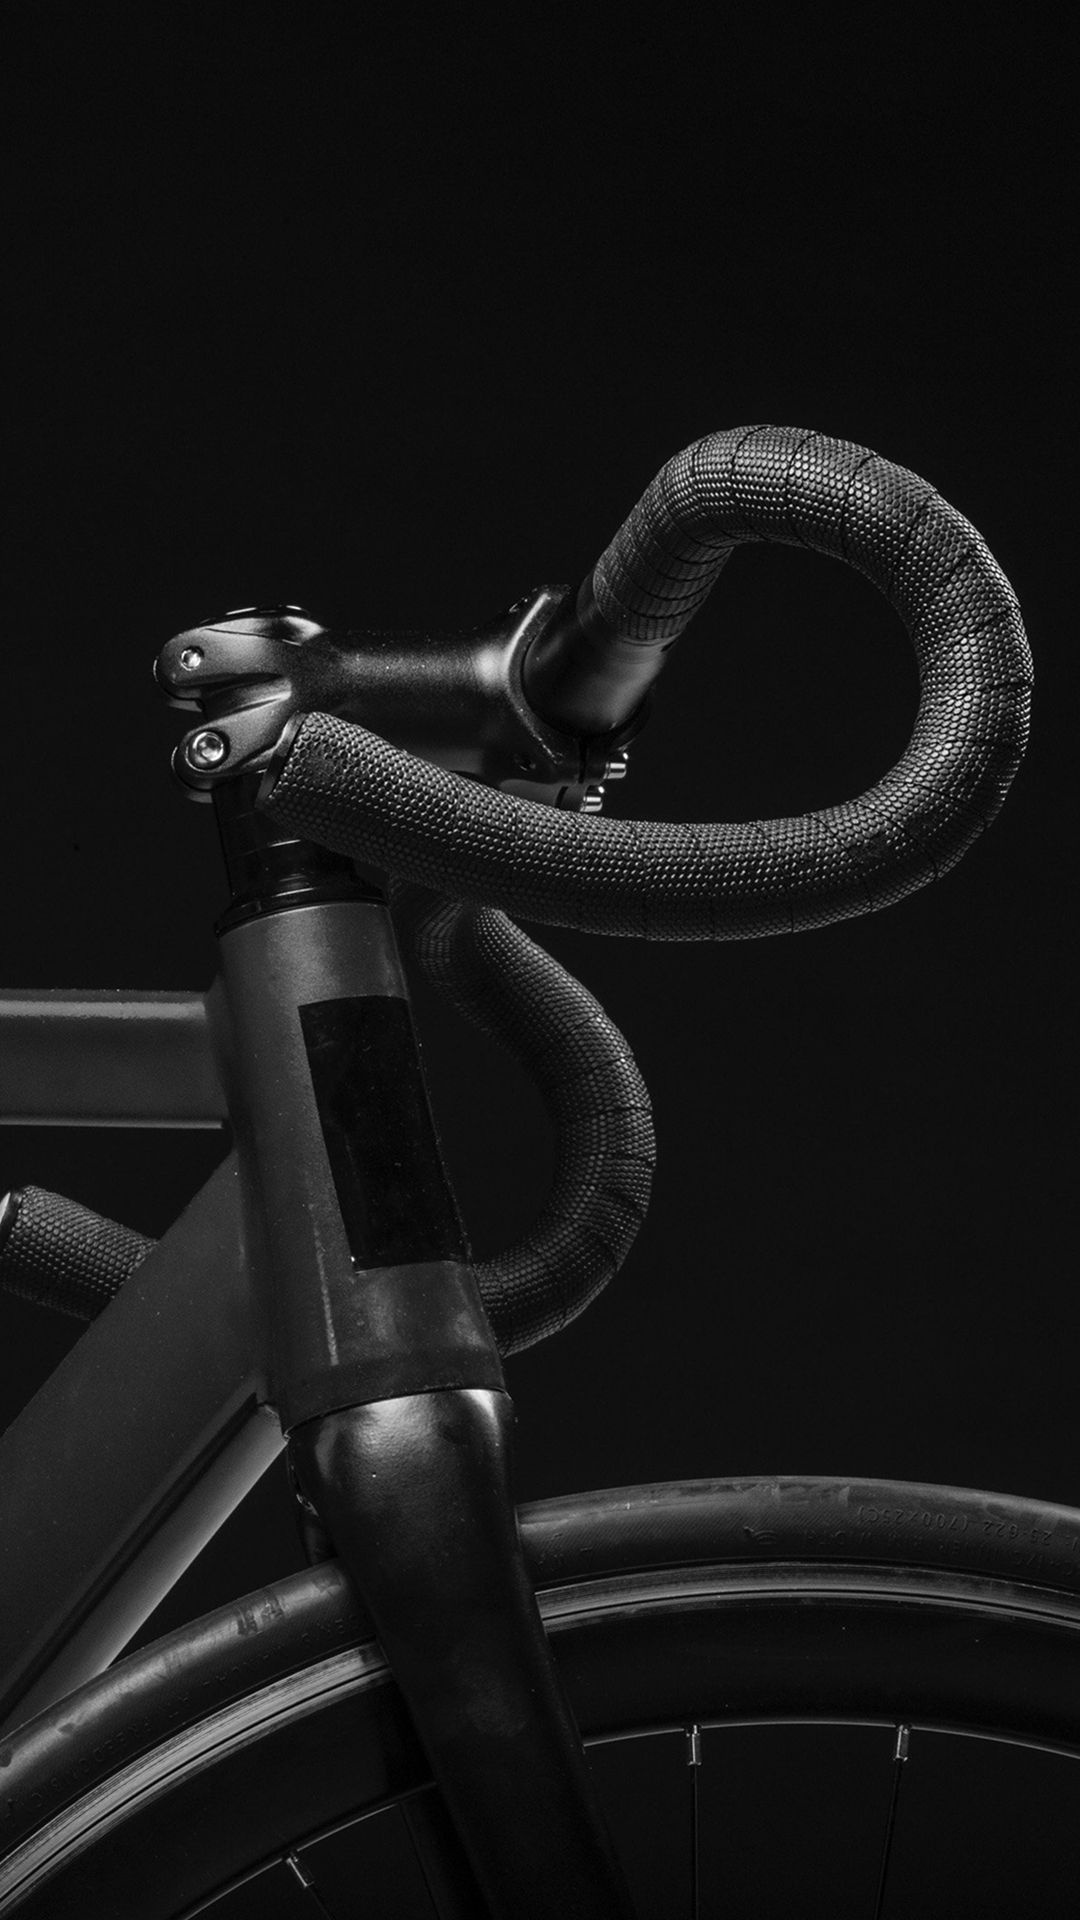 Pro Bikes, Dark minimalistic photography, Nature-inspired, Bike art, 1080x1920 Full HD Phone